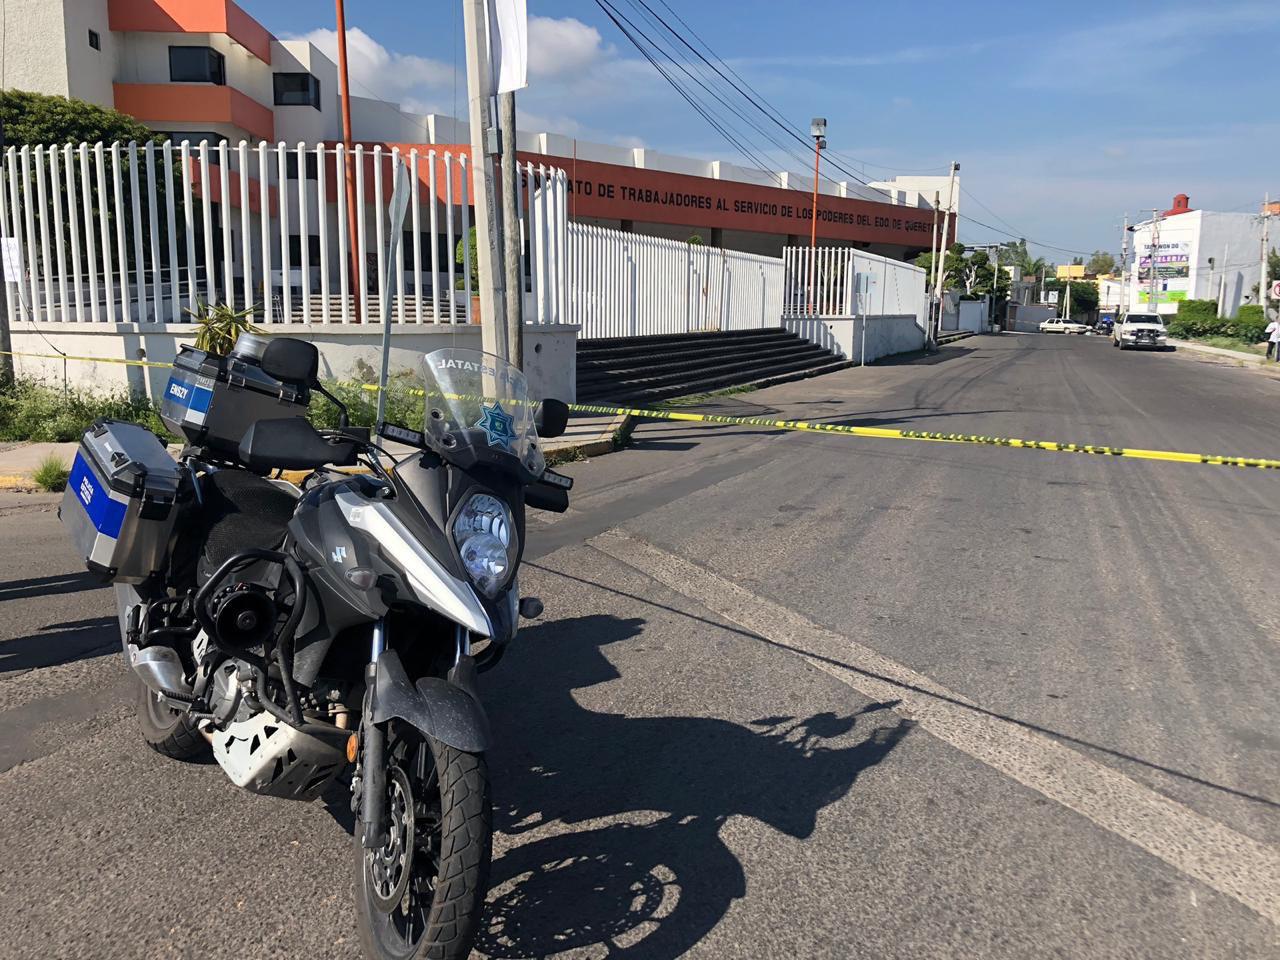  Al menos 7 personas armadas roban nómina del Sindicato de Trabajadores del Estado de Querétaro